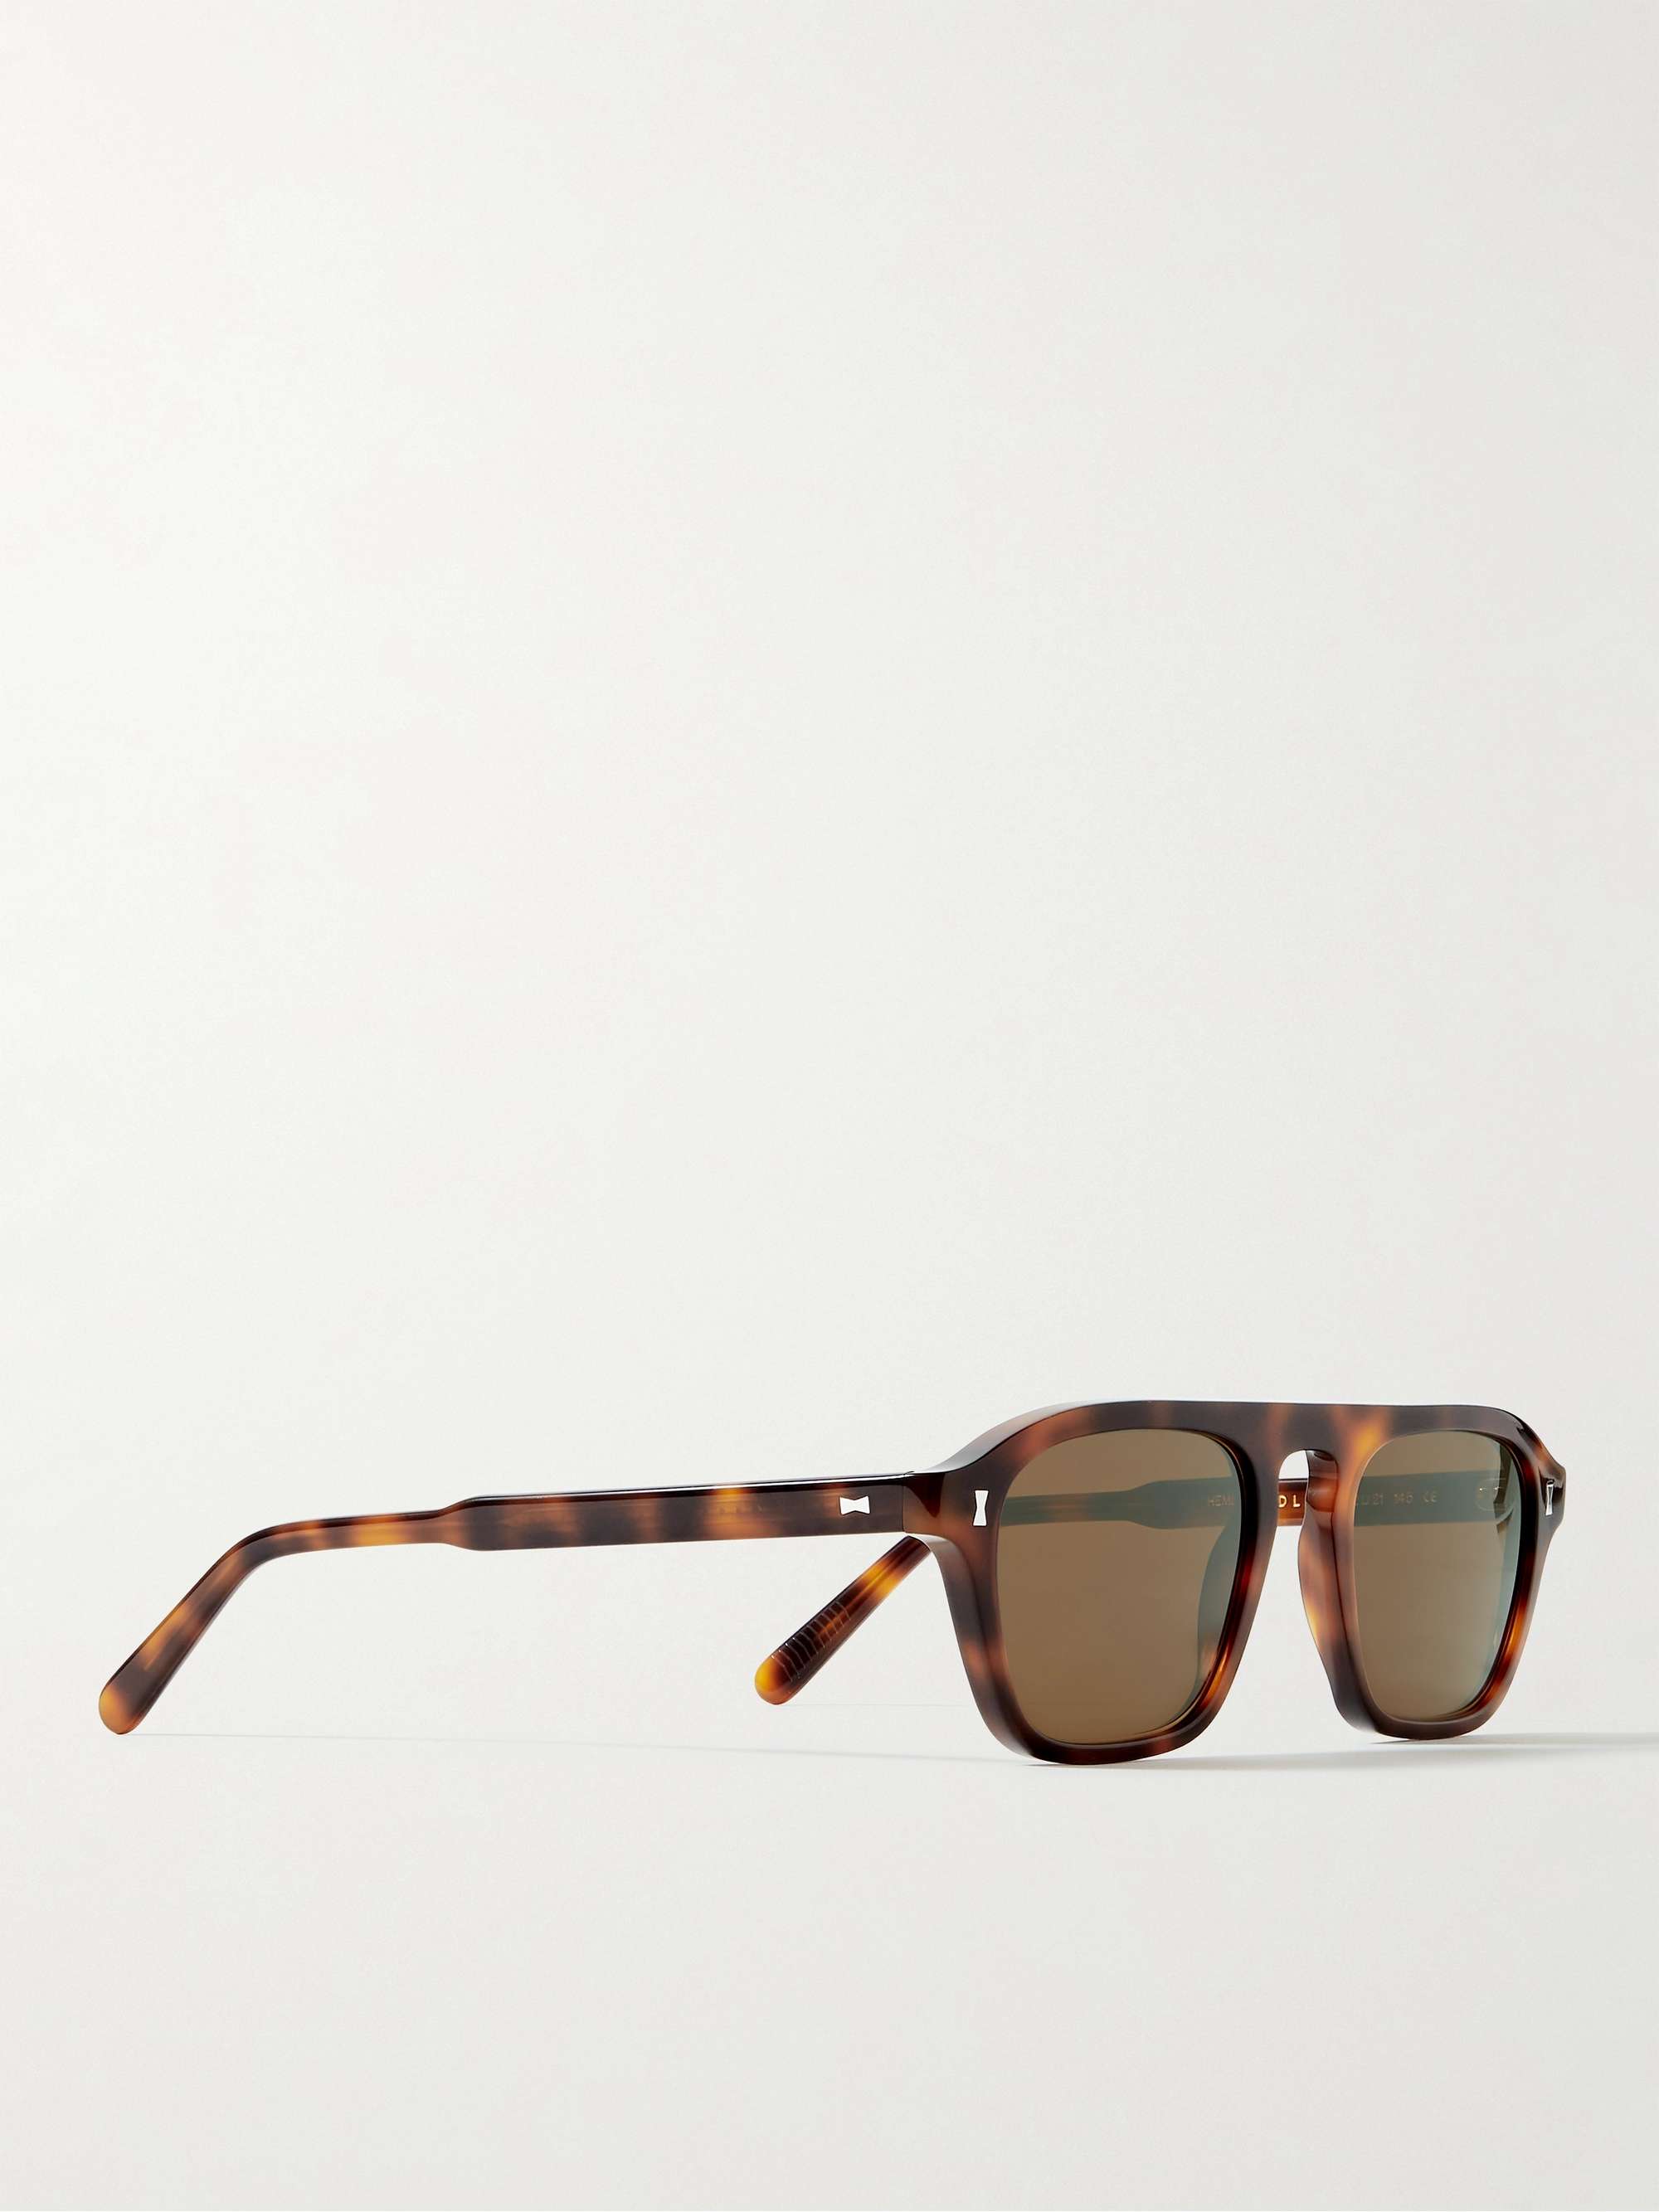 CUBITTS Hemingford Rectangular-Frame Tortoiseshell Acetate Sunglasses